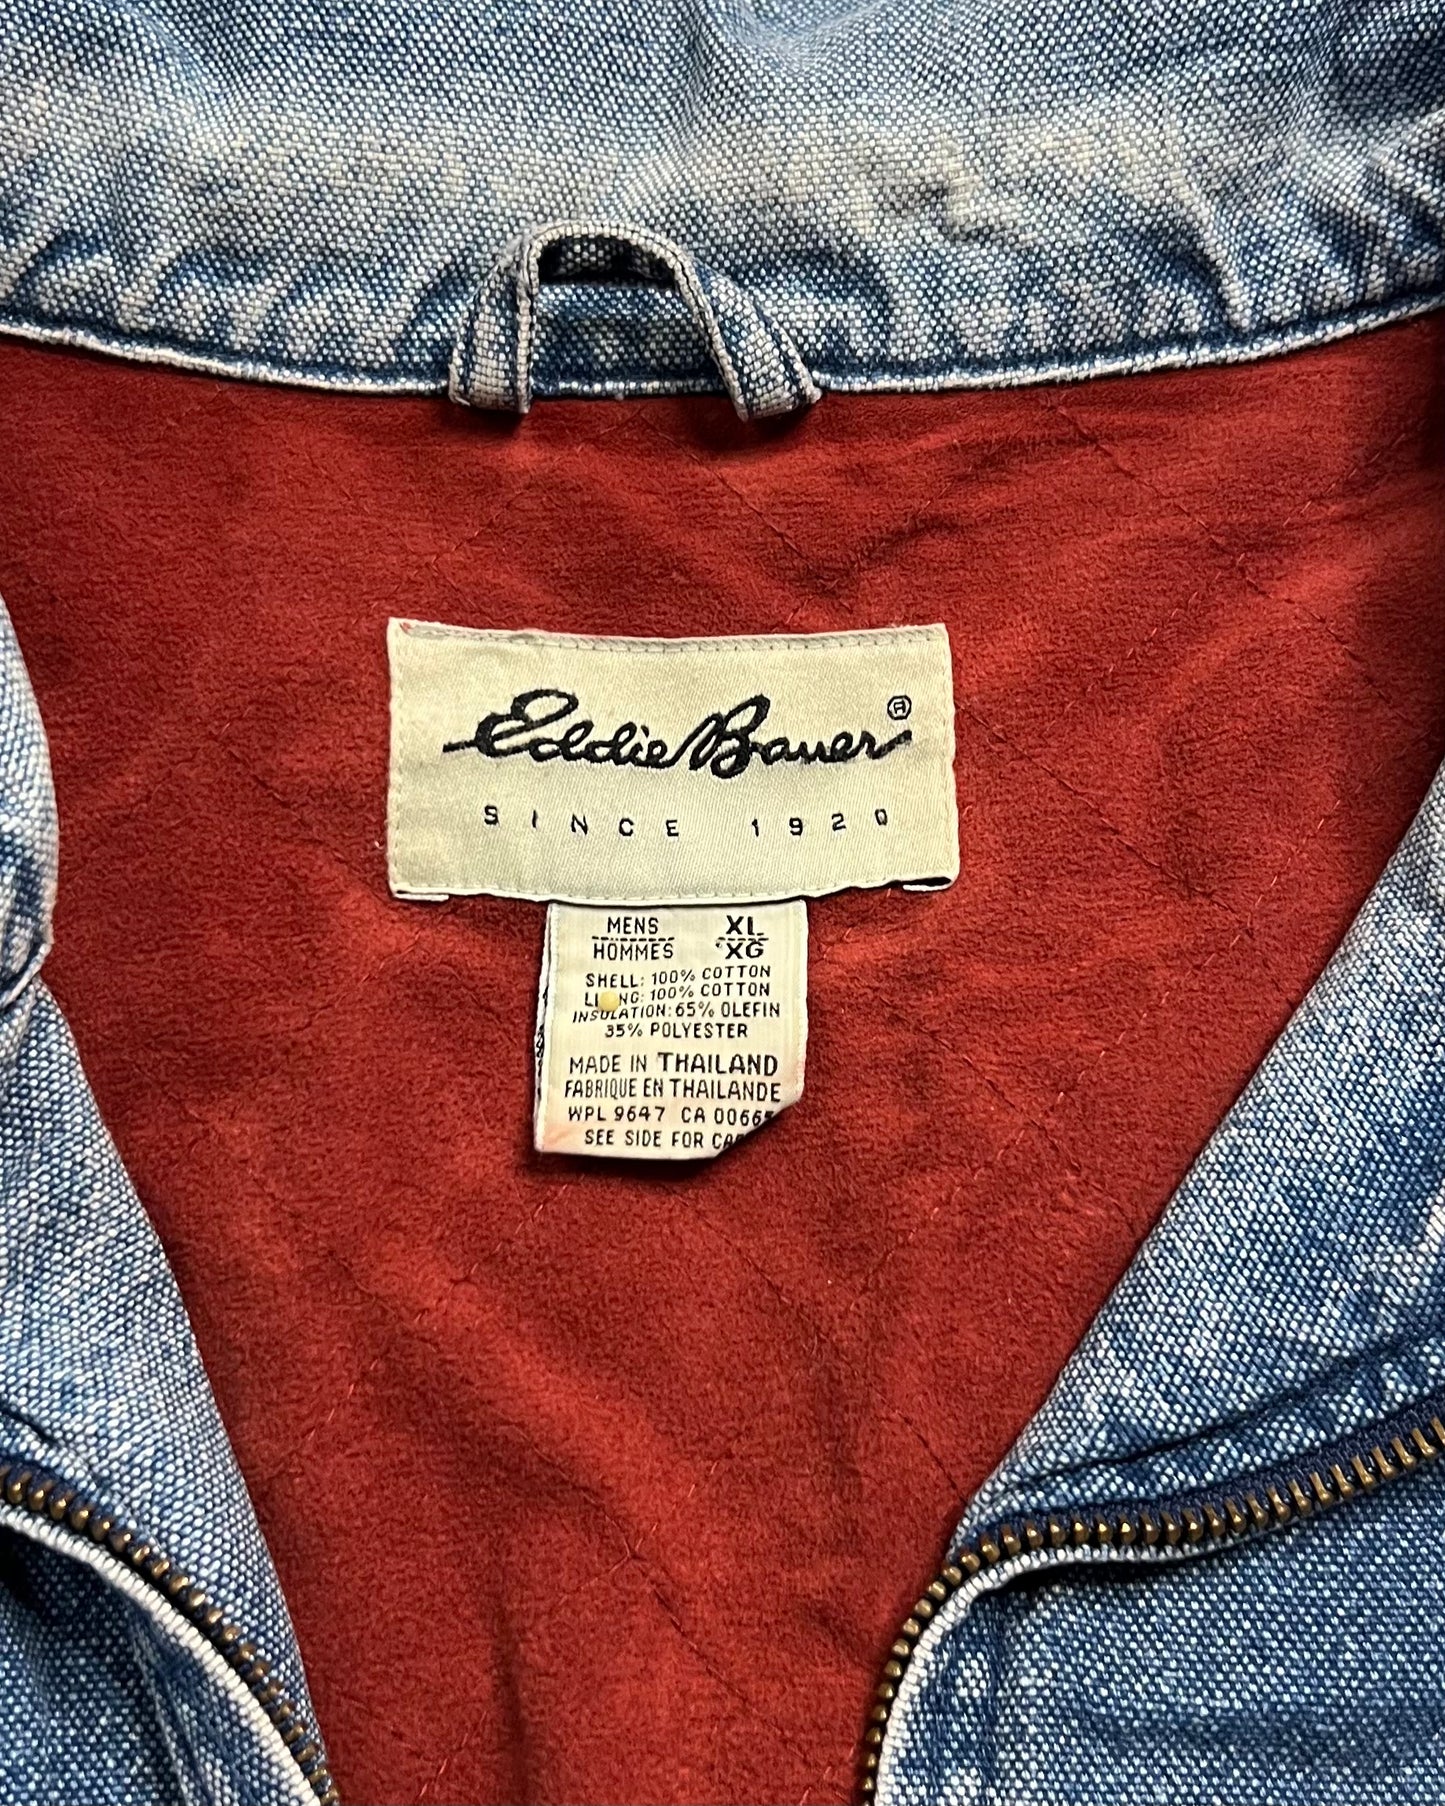 Vintage Eddie Bauer Thinsulate Insulated Jacket